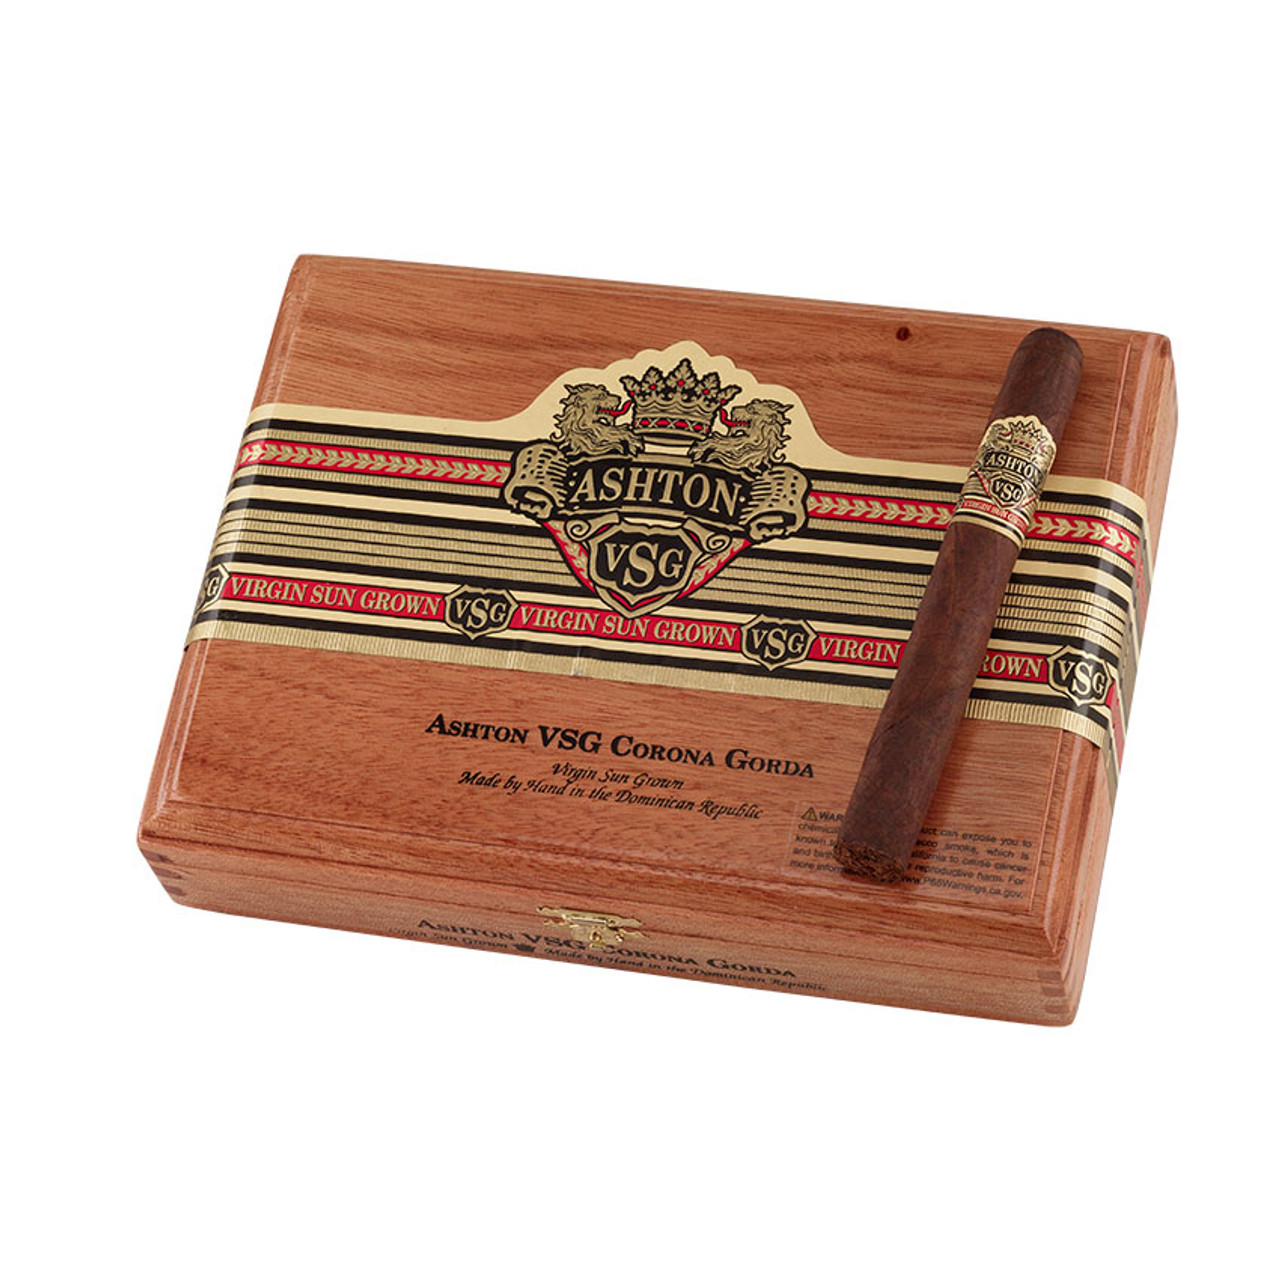 Ashton VSG Corona Gorda Cigars - 5.75 x 46 (Box of 24) *Box